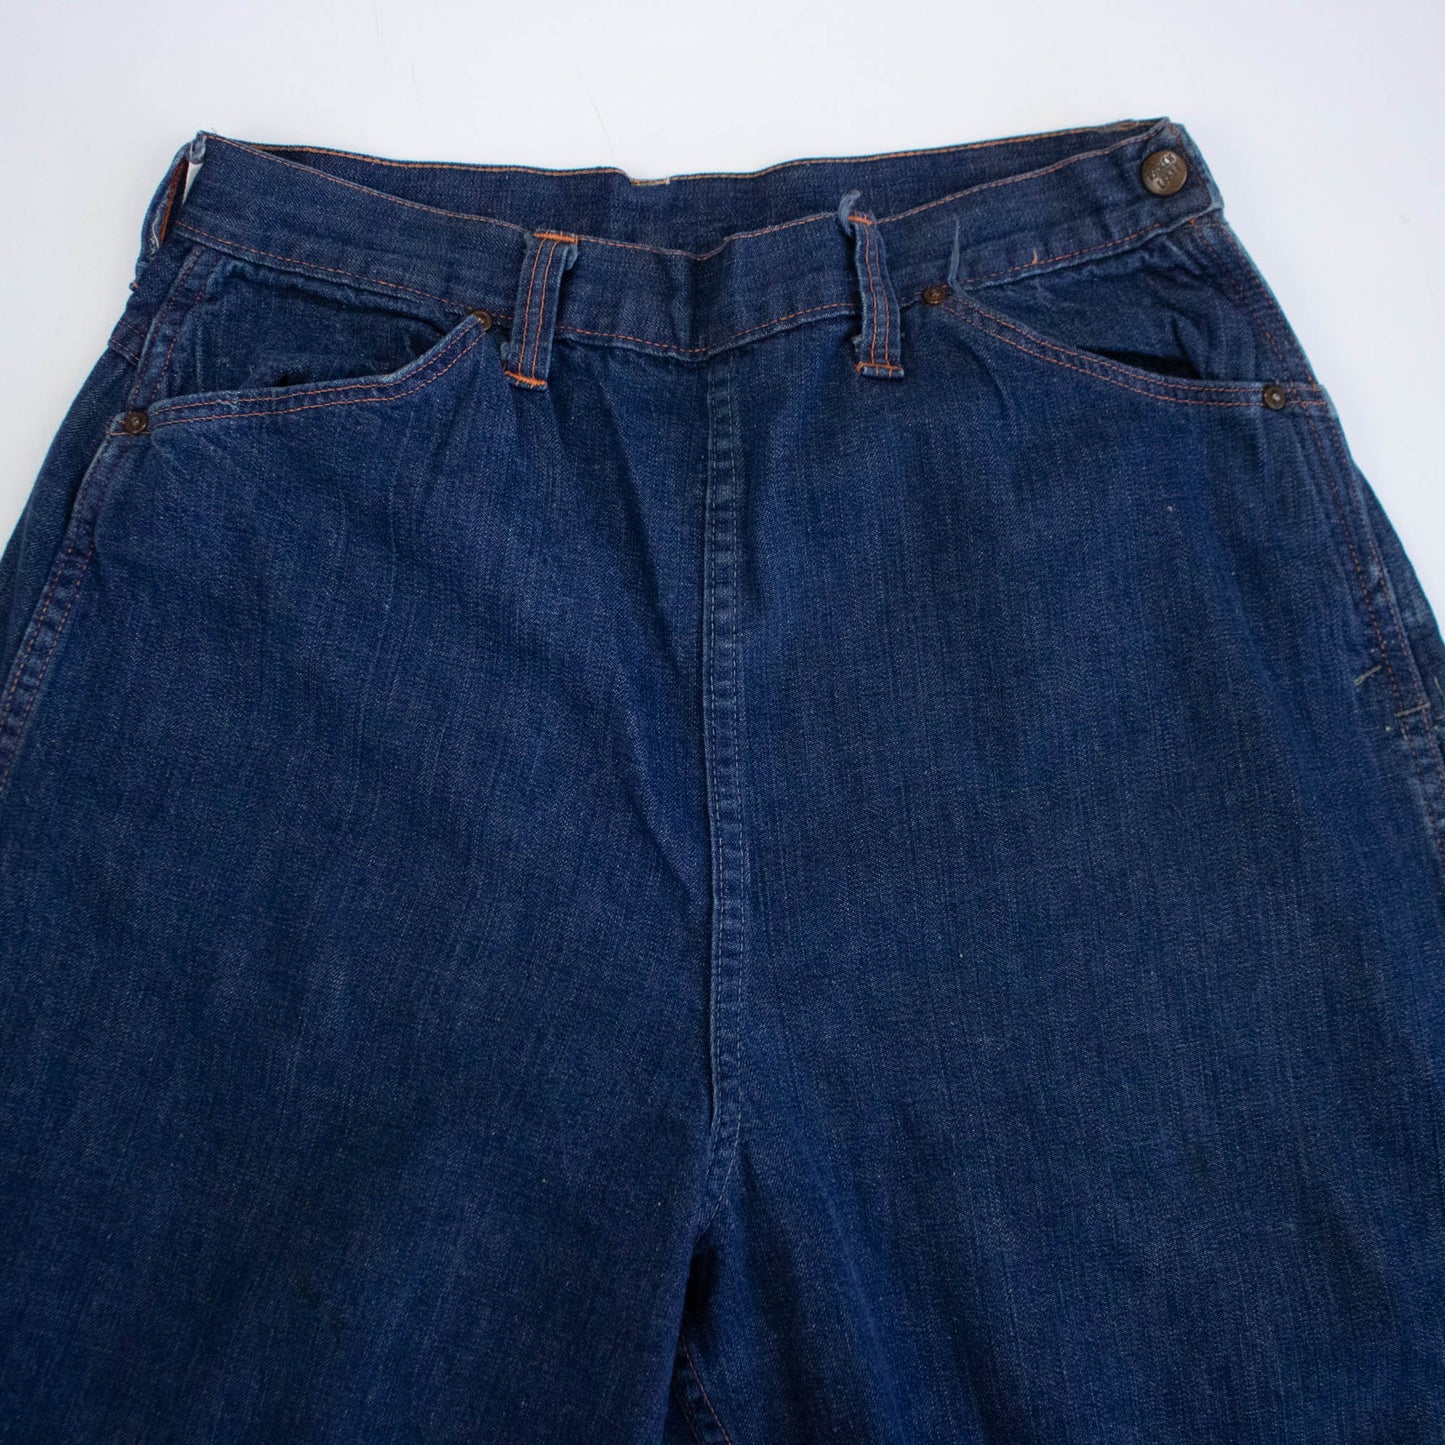 40s/50s Dark Indigo Side Zip Jeans